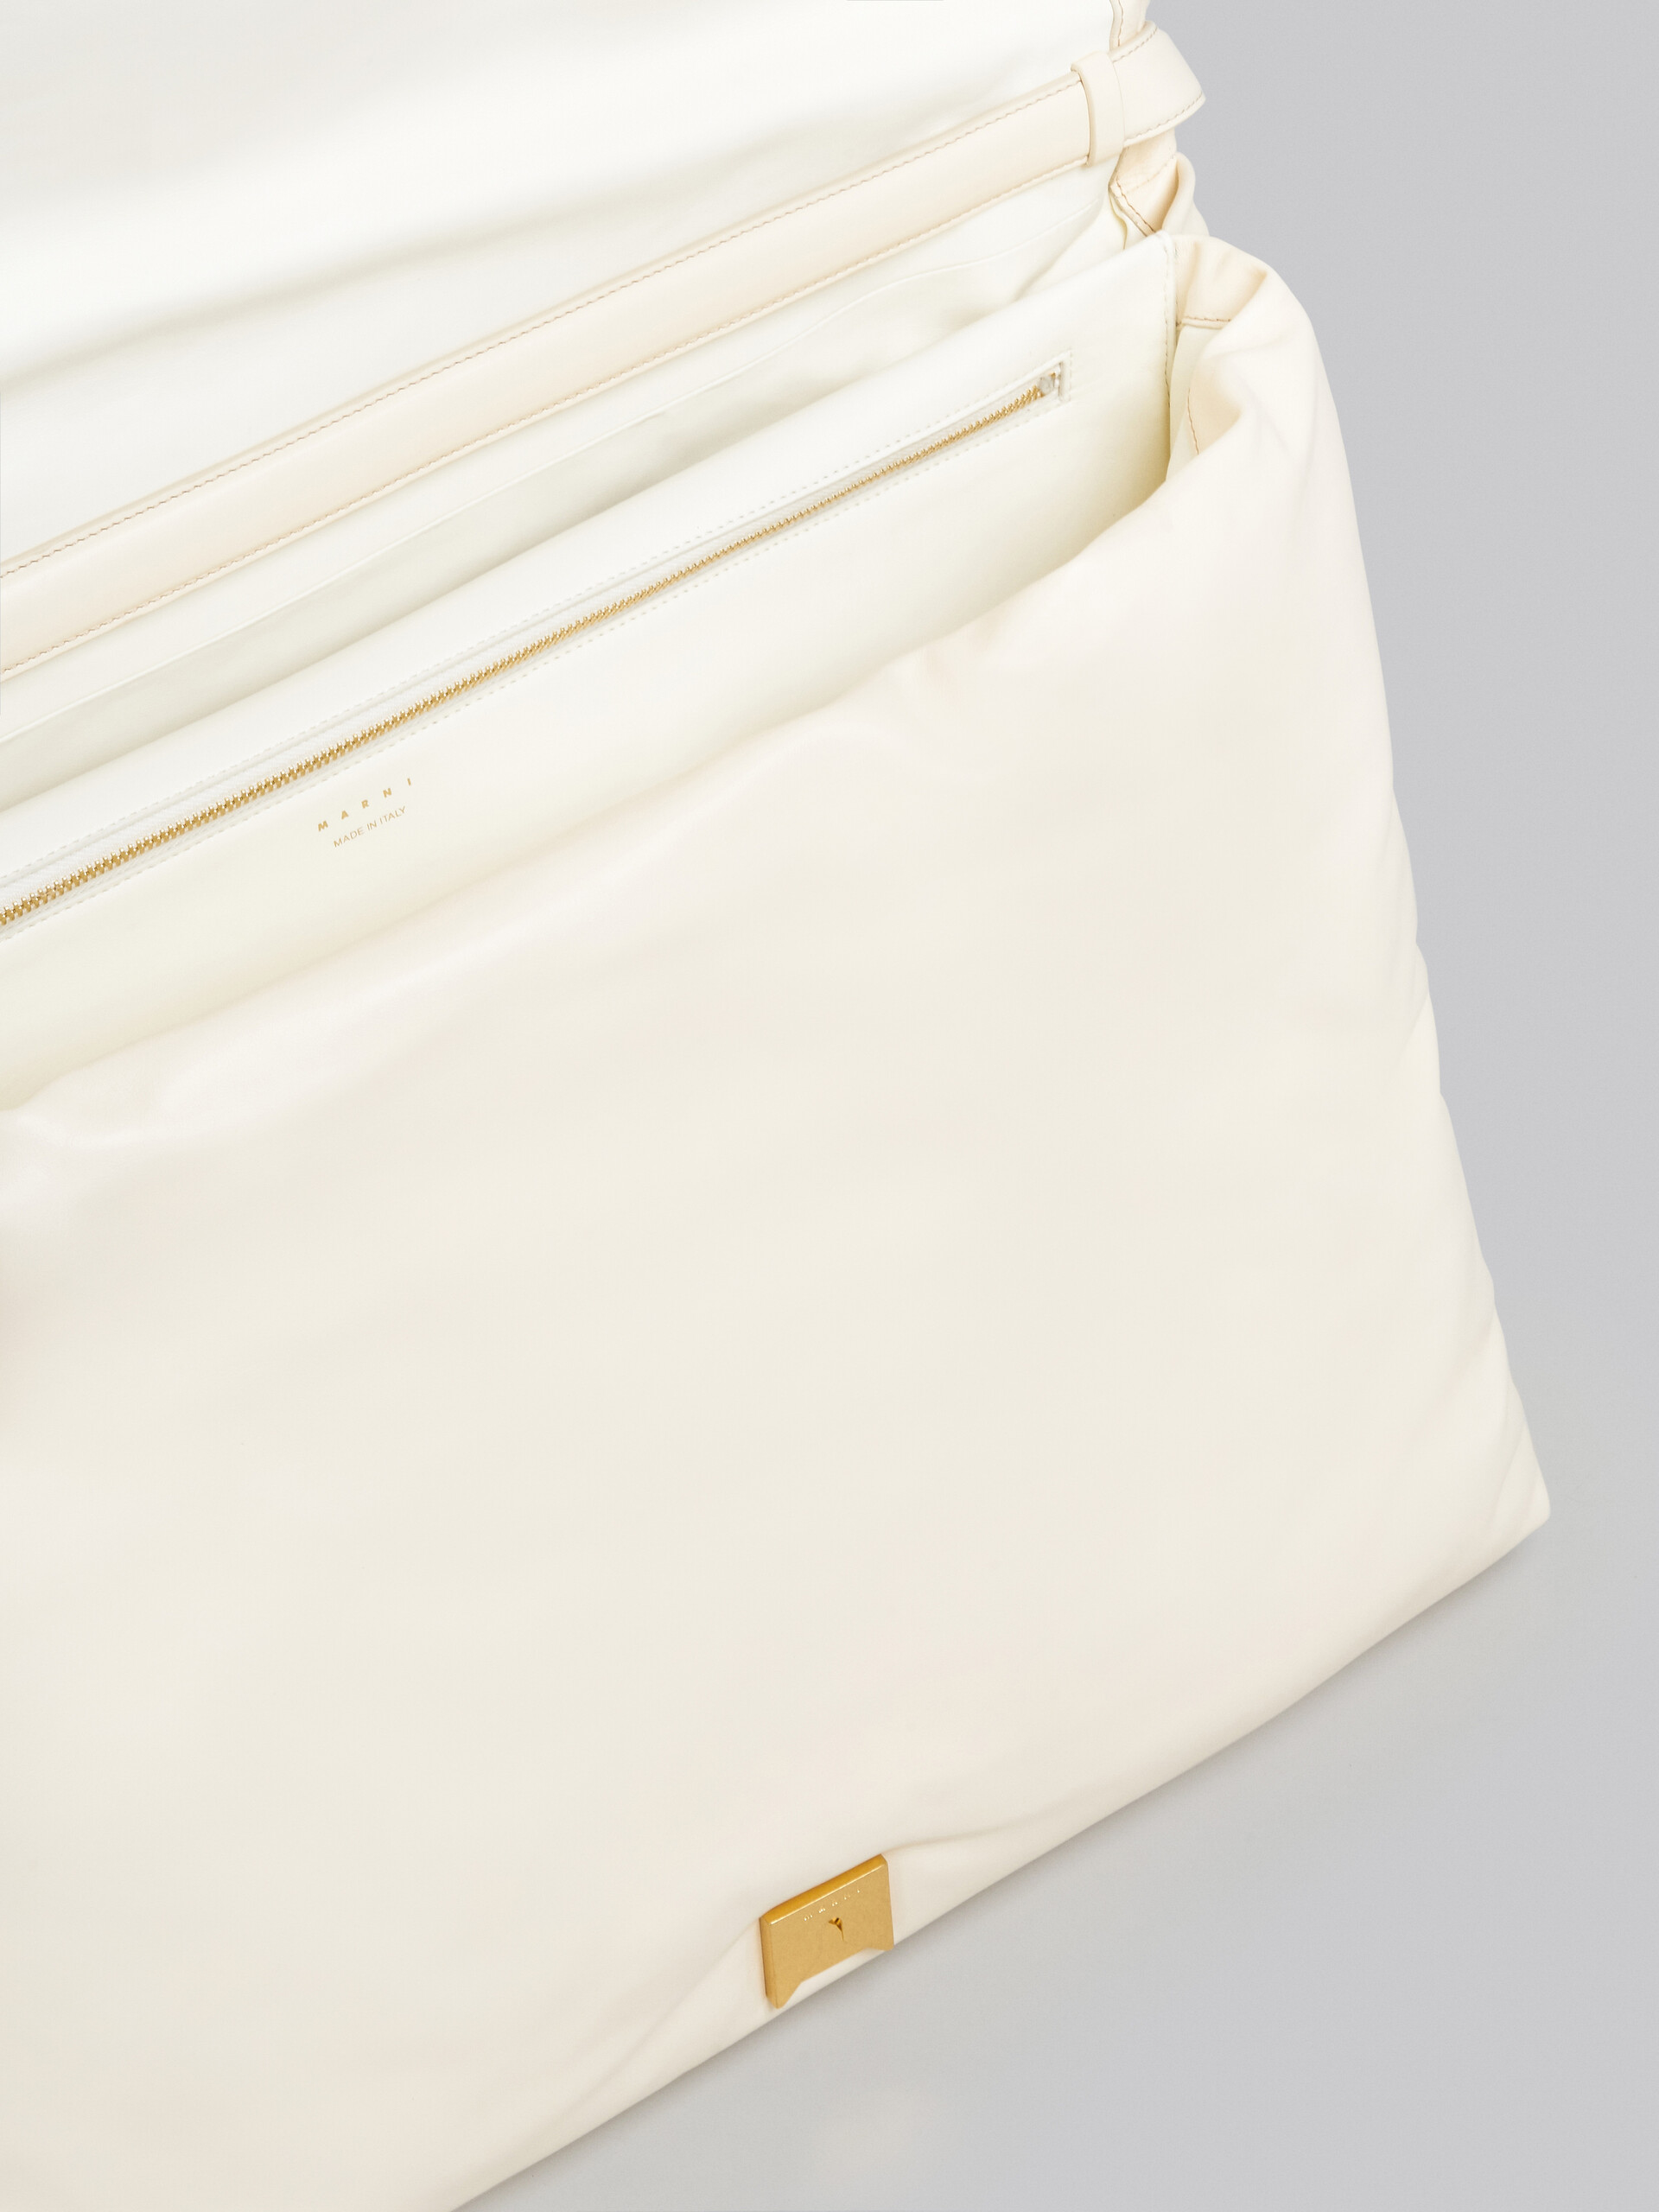 Maxi ivory calsfkin Prisma bag - Shoulder Bag - Image 4